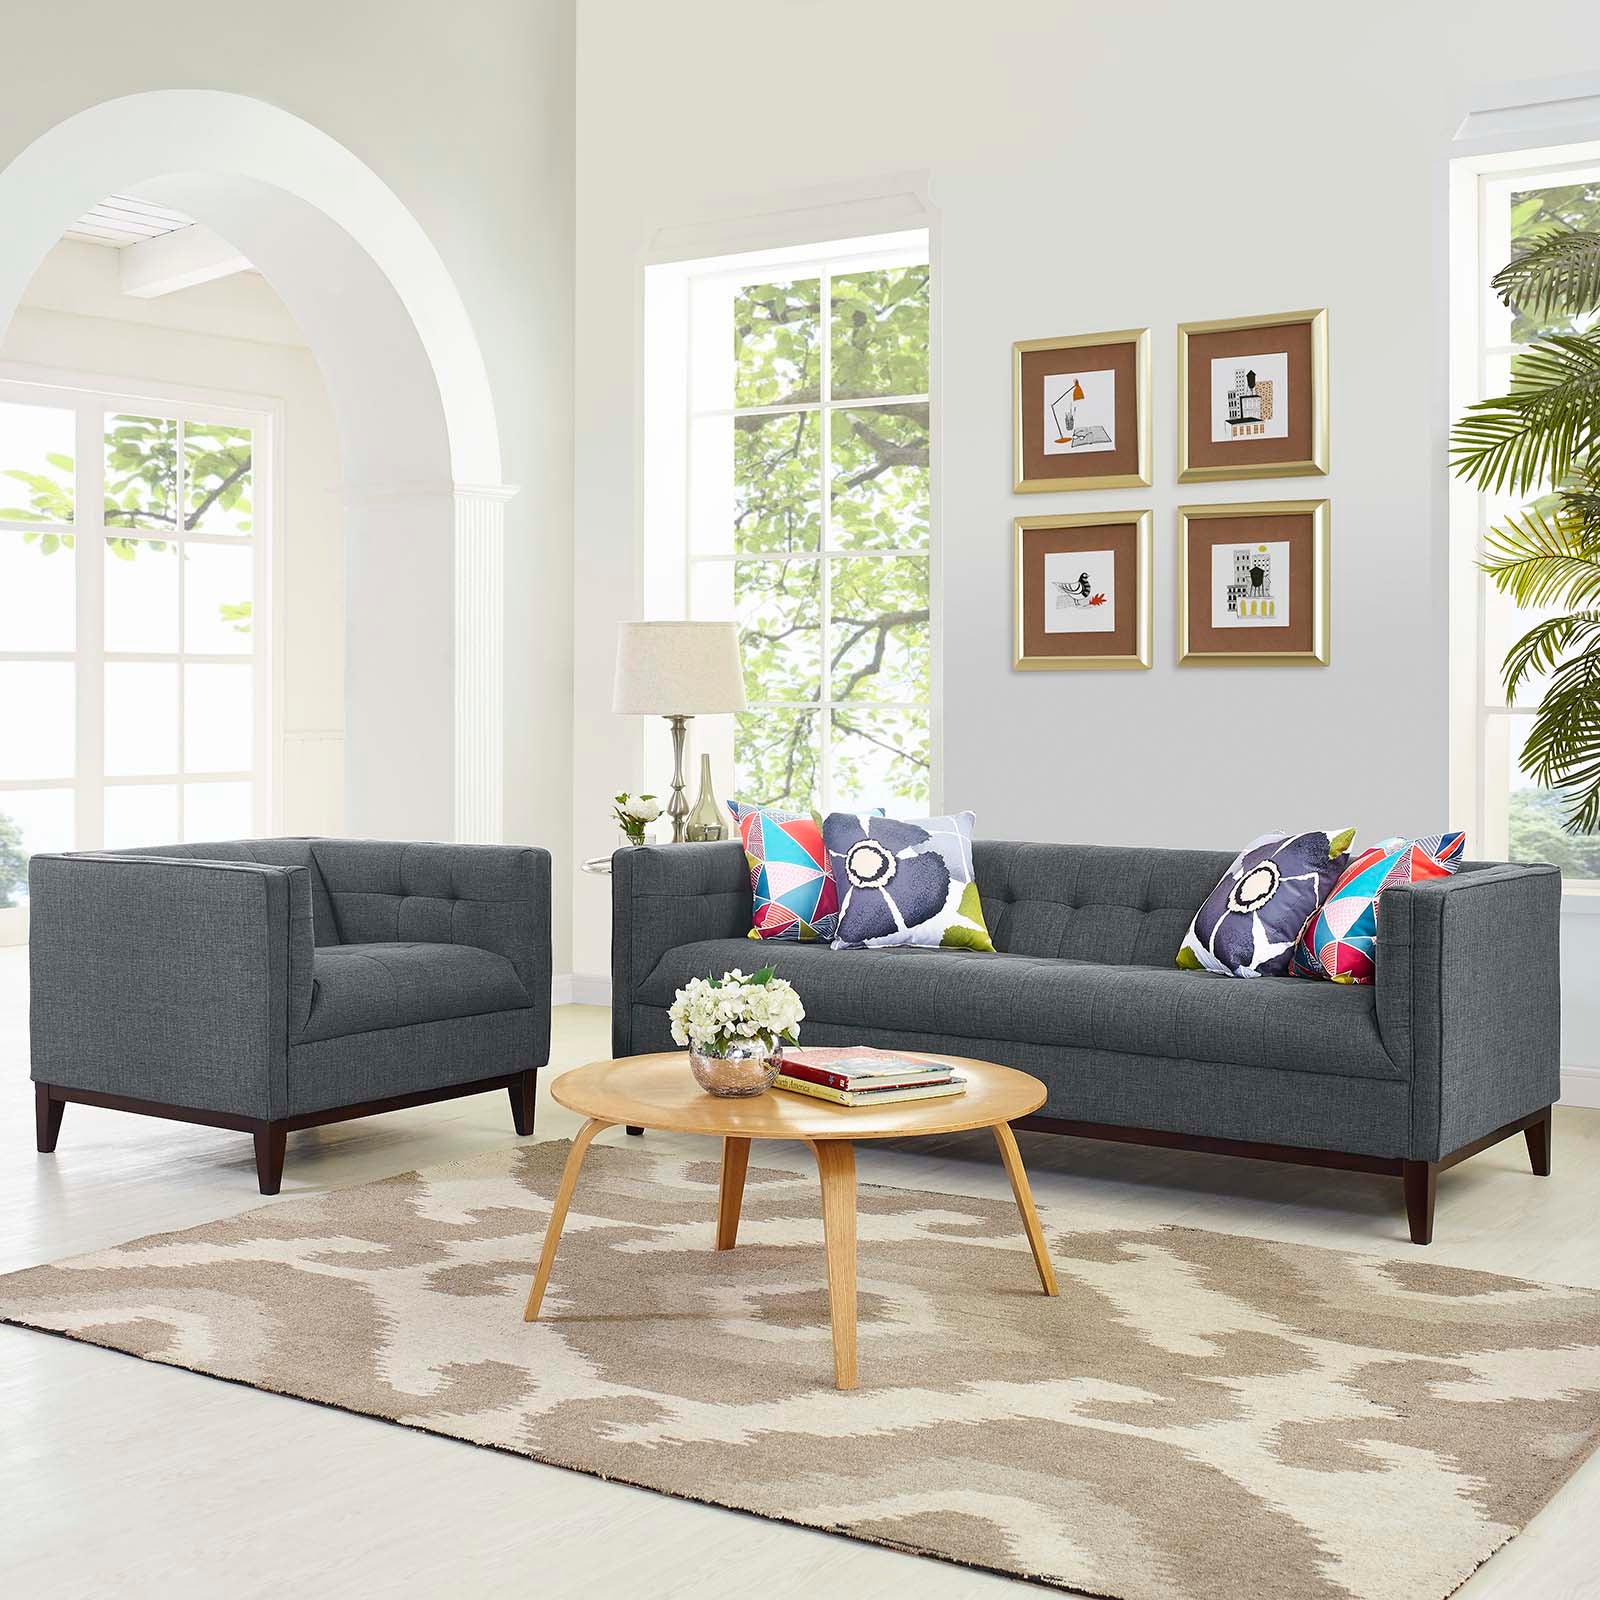 Modway Living Room Sets - Serve Living Room Set Set of 2 Gray